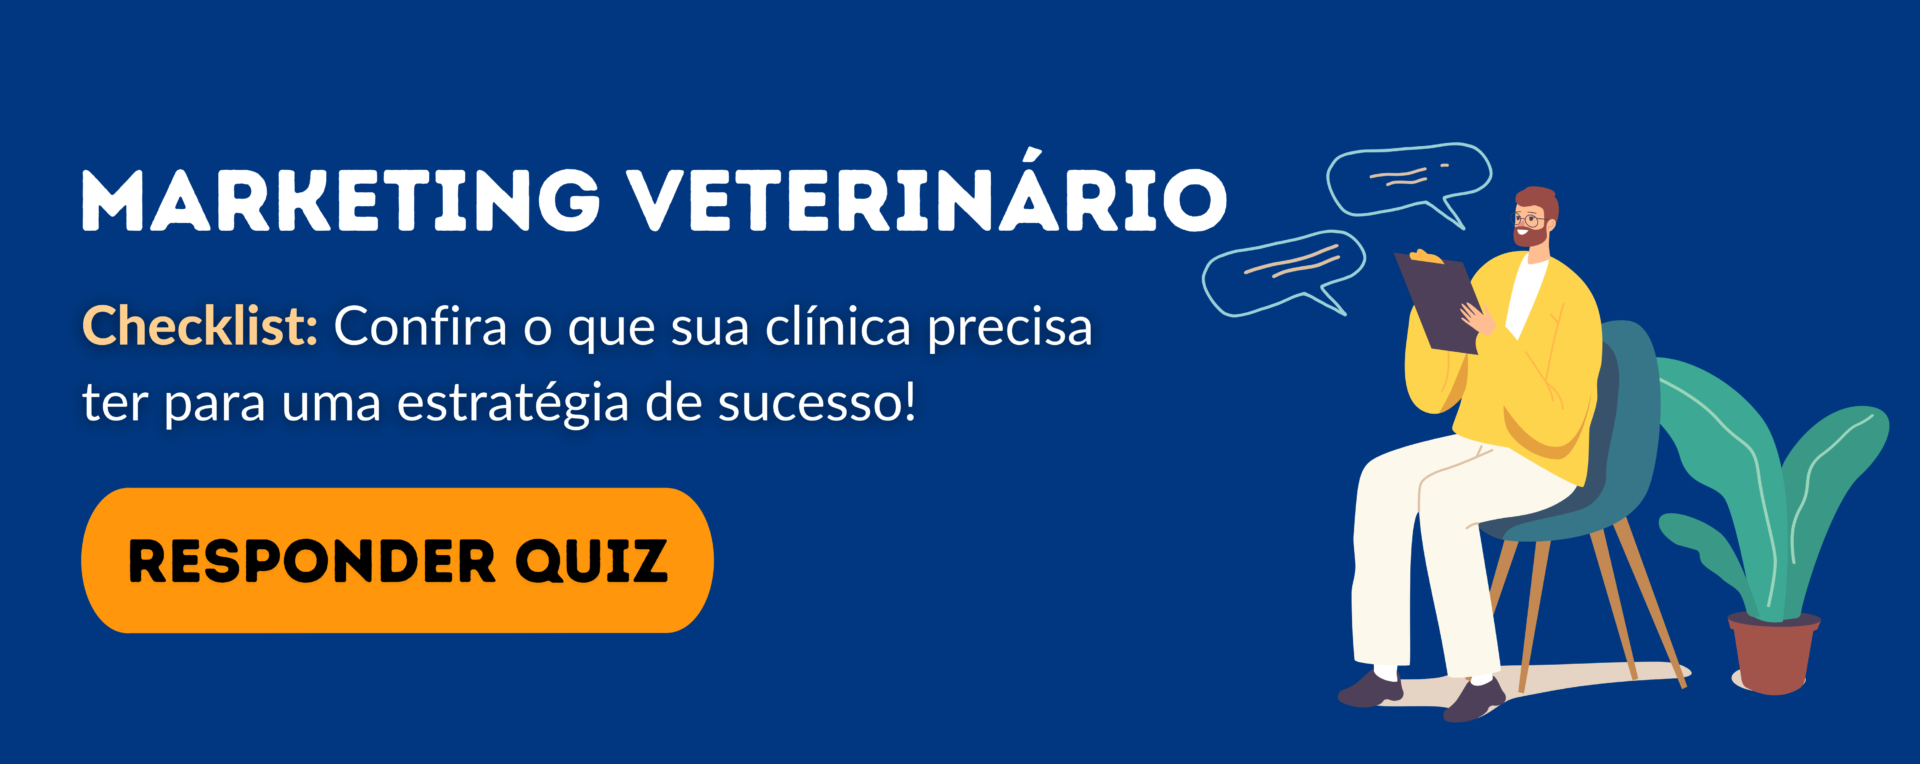 checklist marketing veterinária